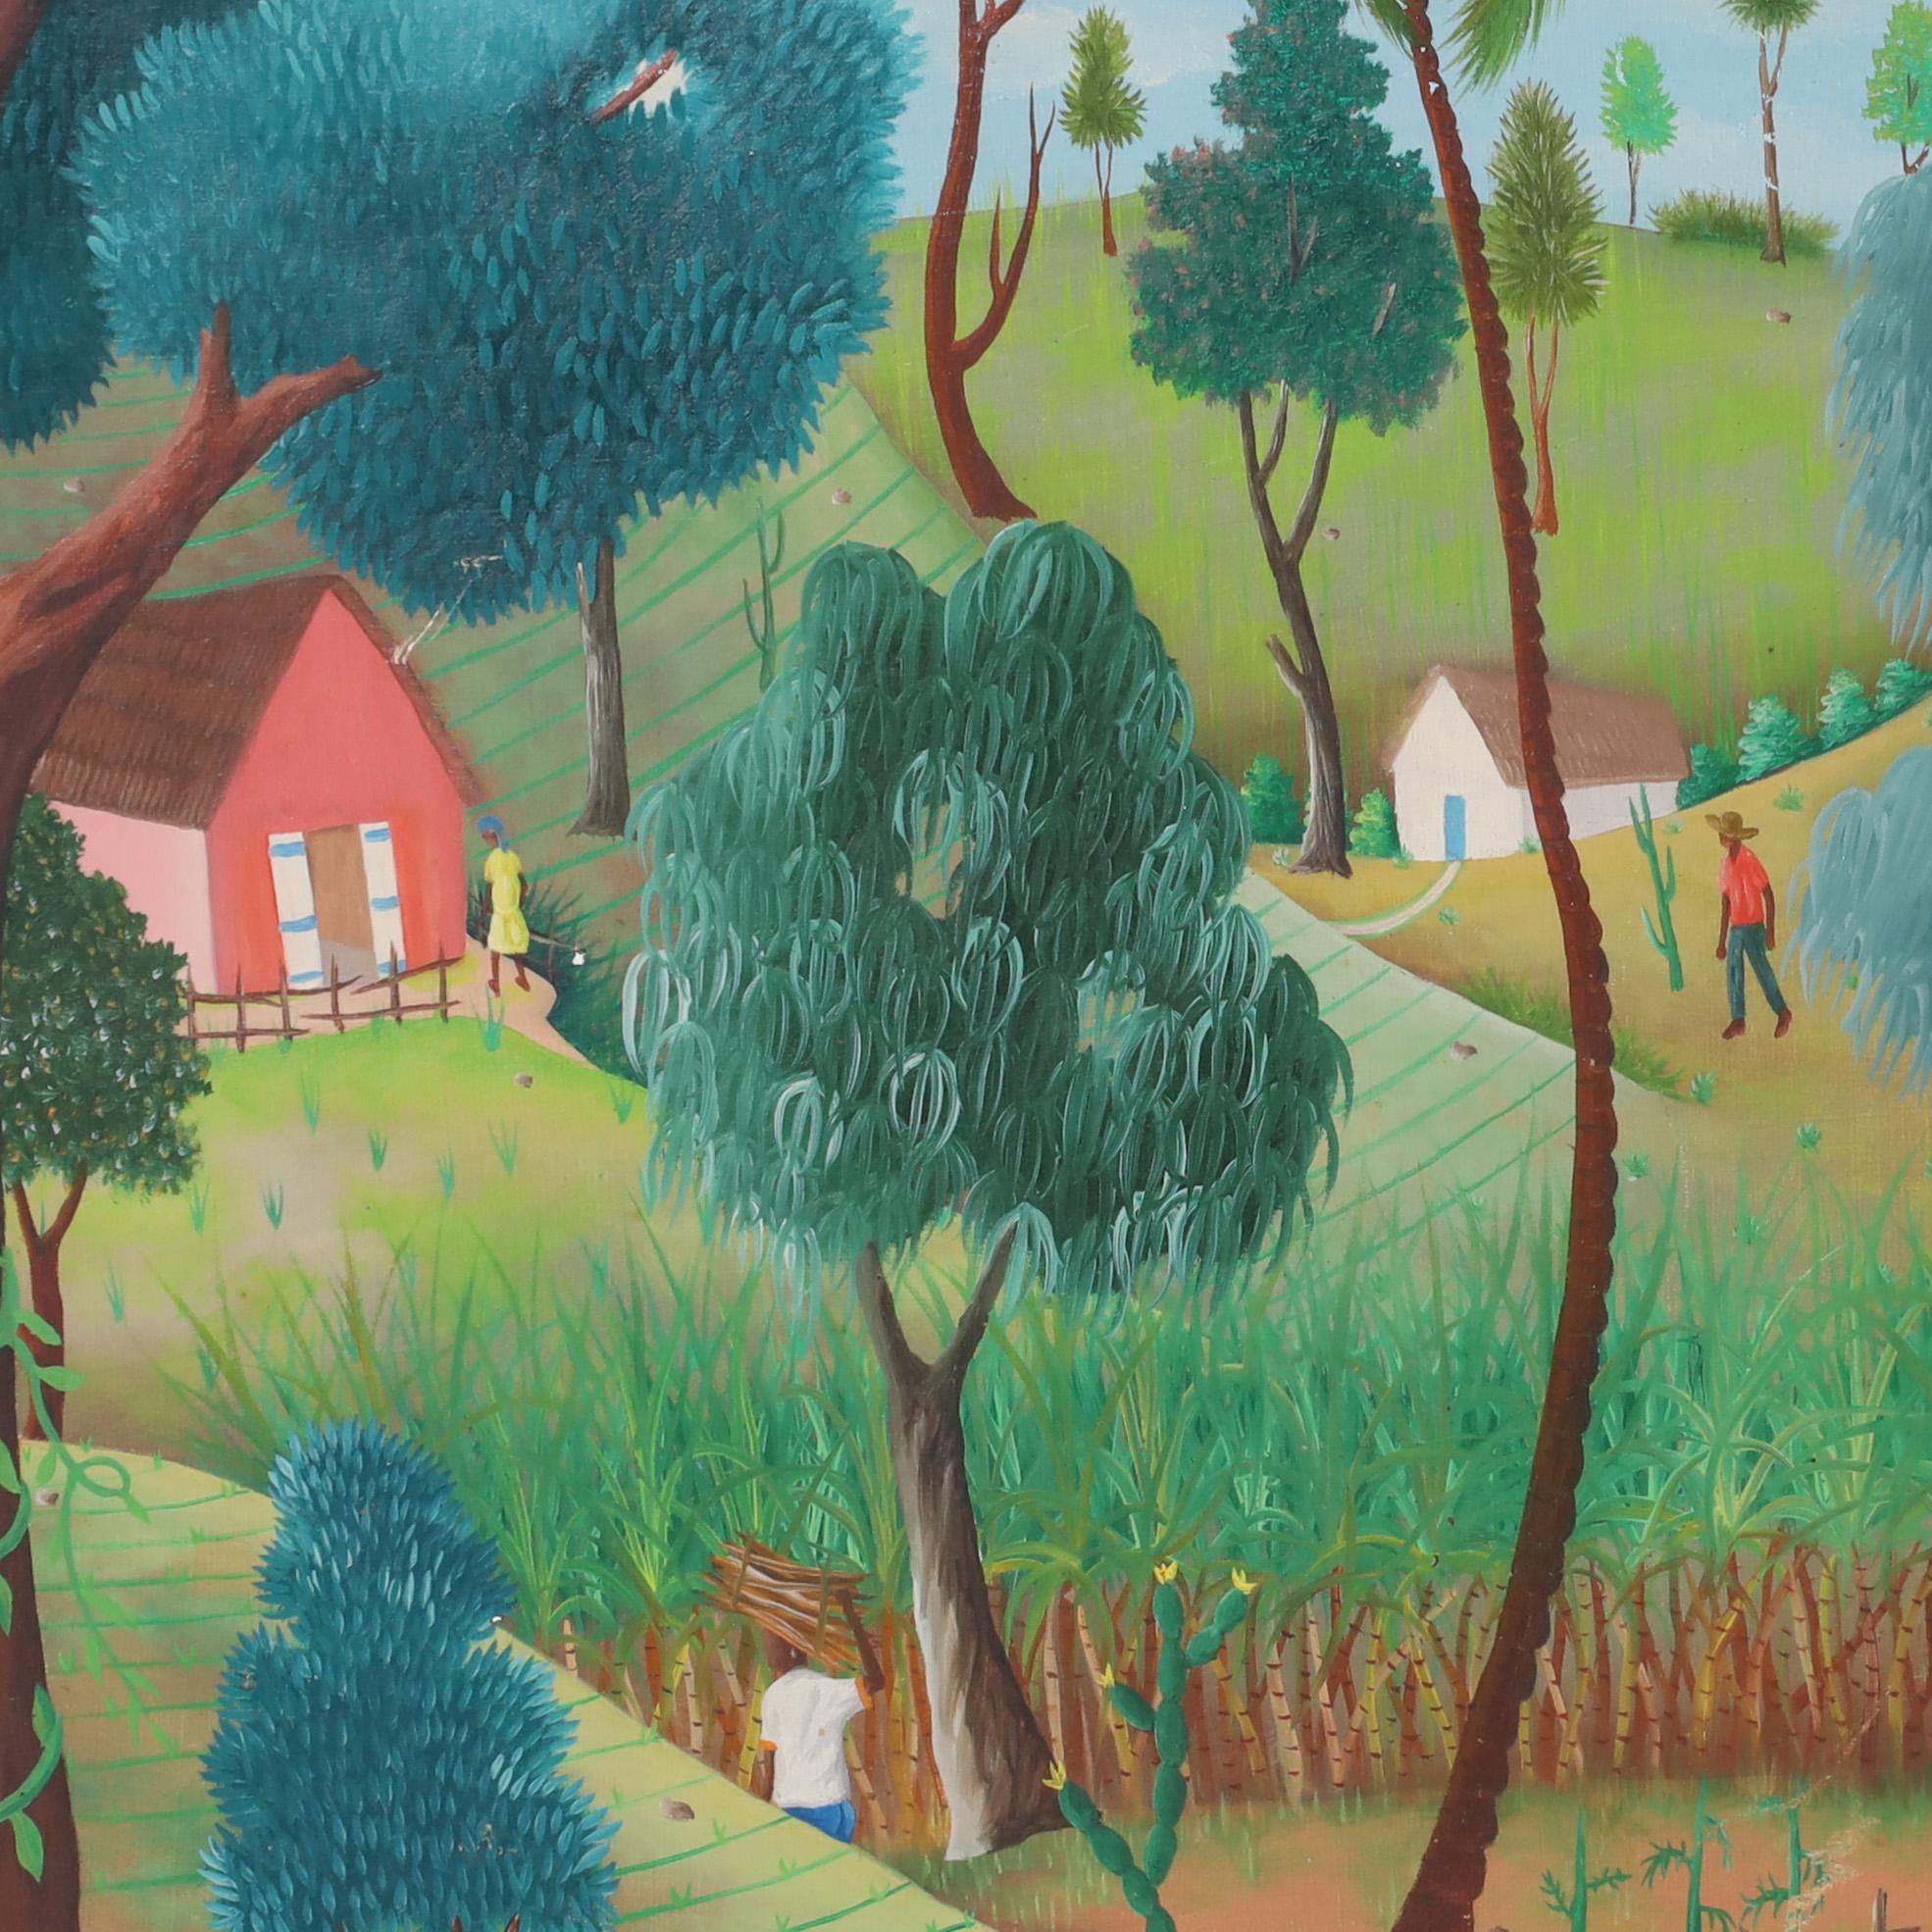 Fantastique peinture acrylique haïtienne vintage sur panneau représentant un village rural idyllique exécuté dans une technique naïve ludique. Signée Phiton Latortue et présentée dans son cadre original en bois sculpté.